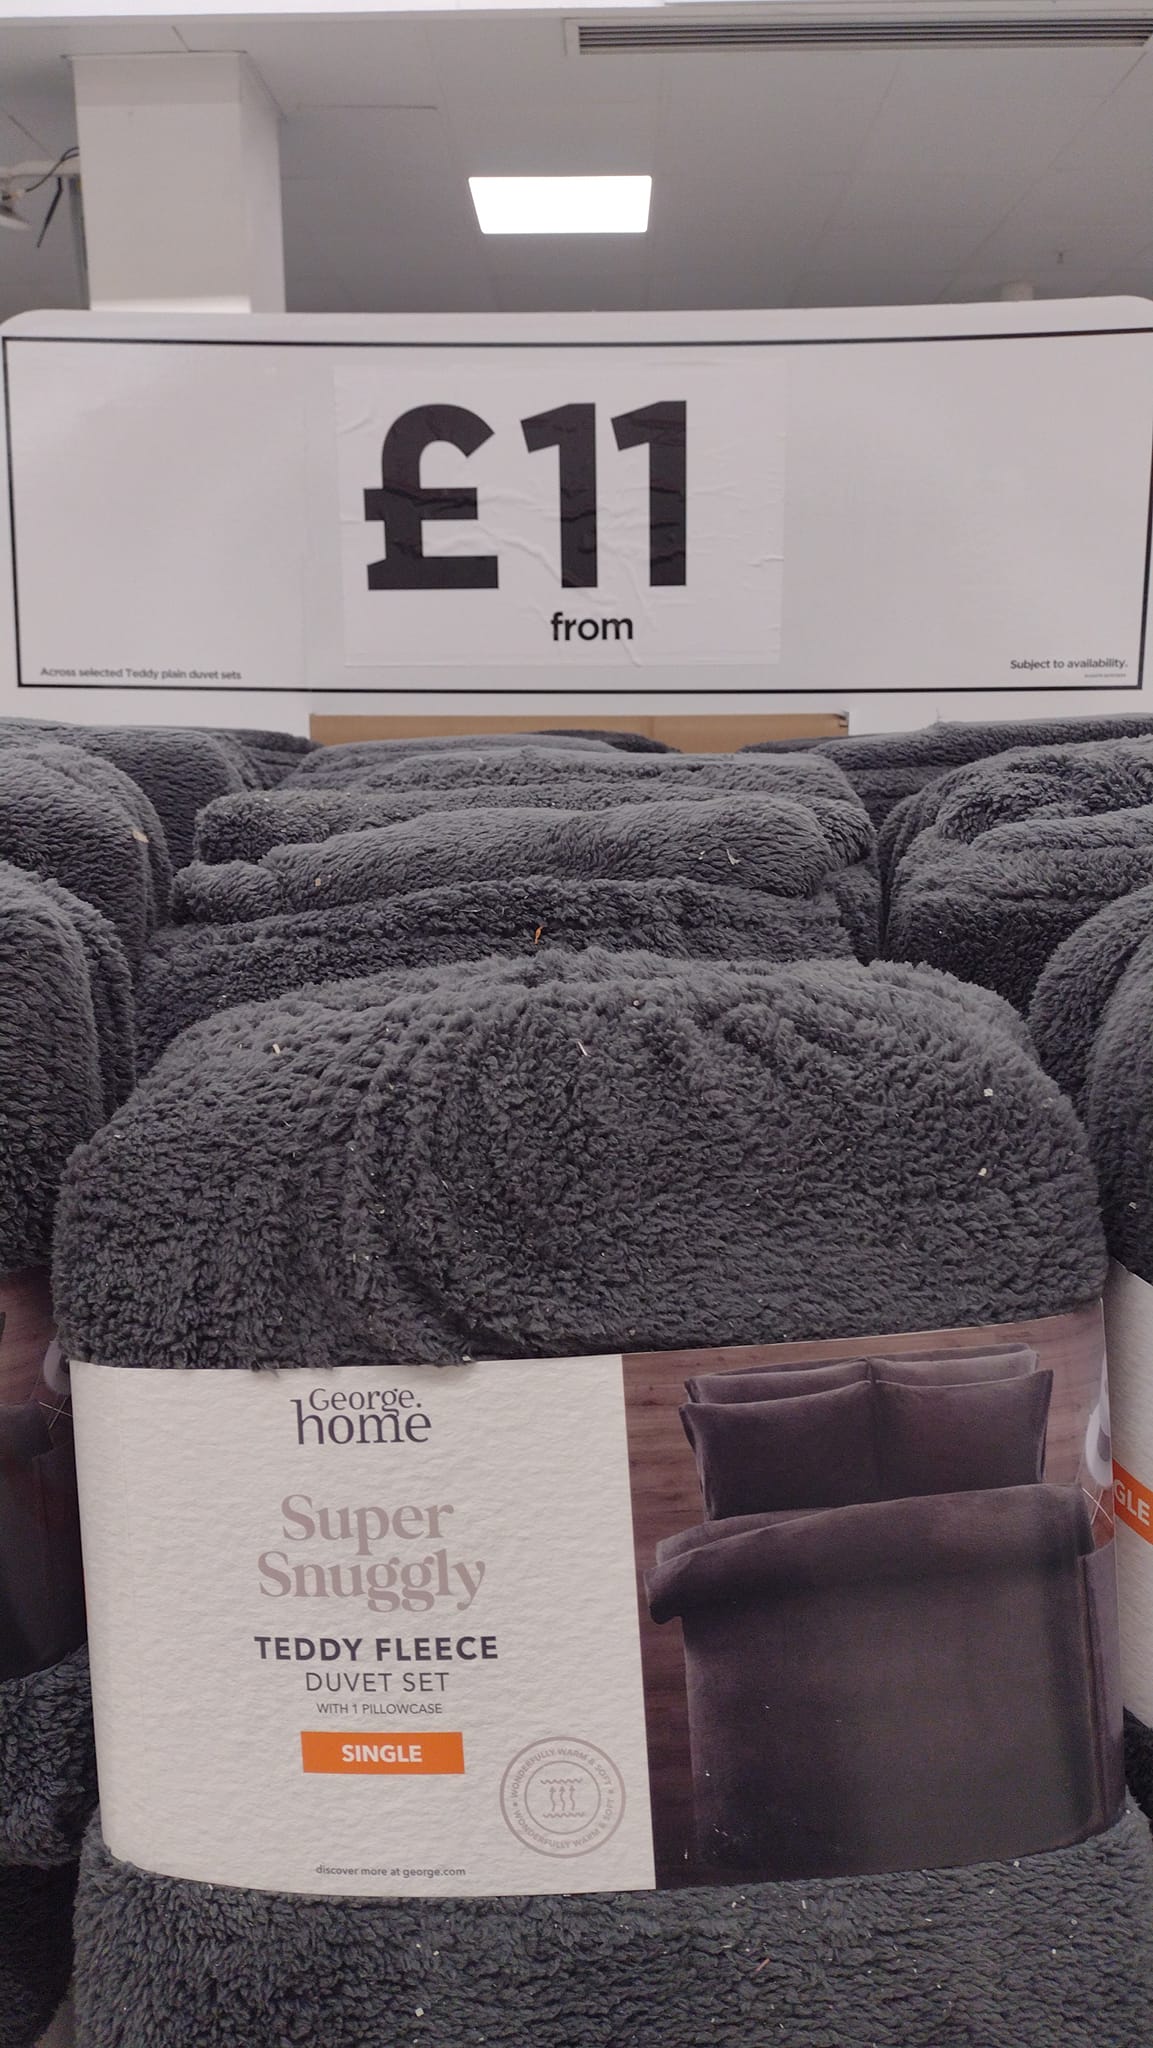 Schon ab 11 £ sind die Bettdeckensets aus Teddyfleece ein Schnäppchen